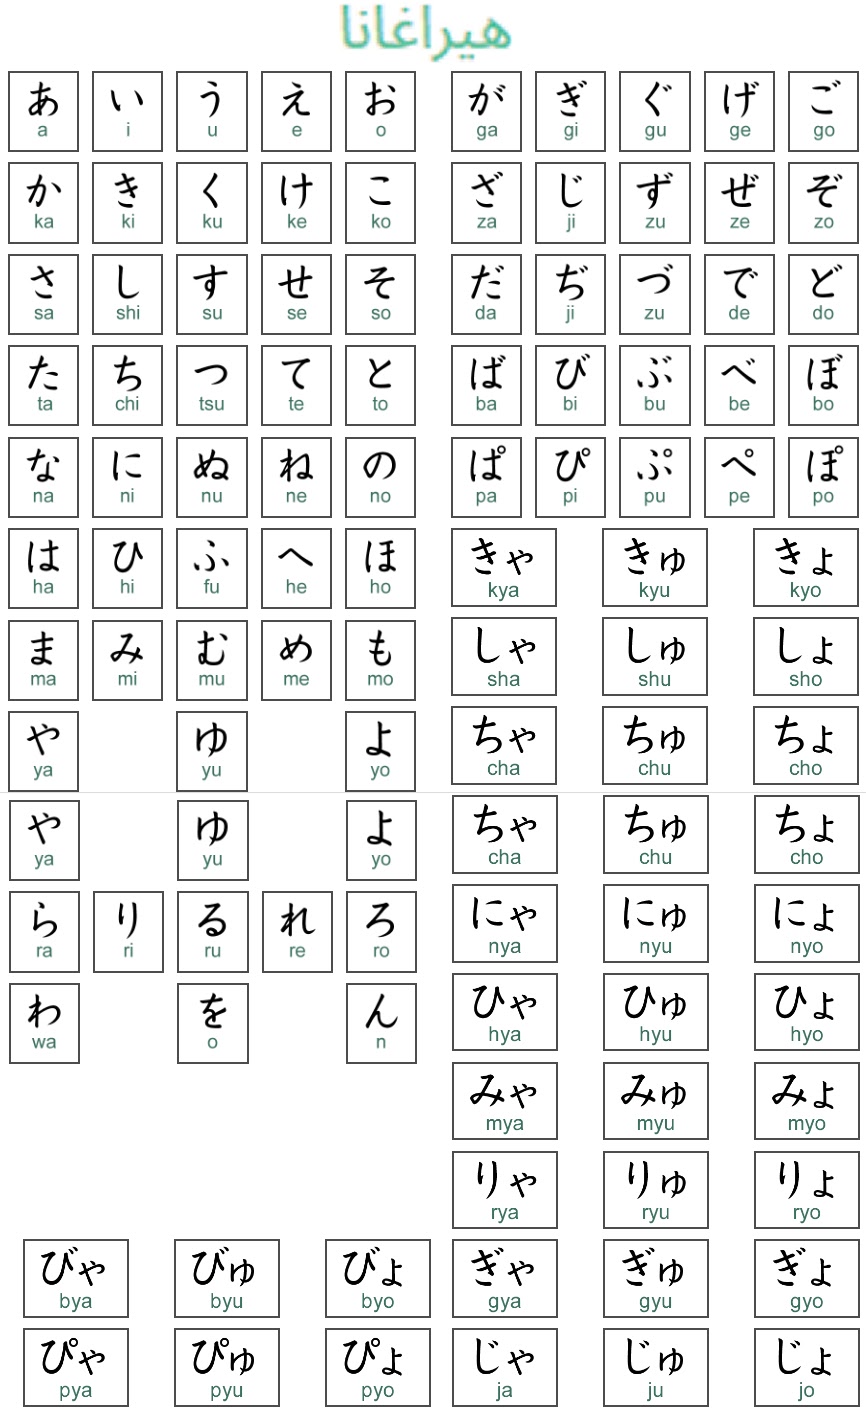 حروف الصينية عدد اللغة ما هي